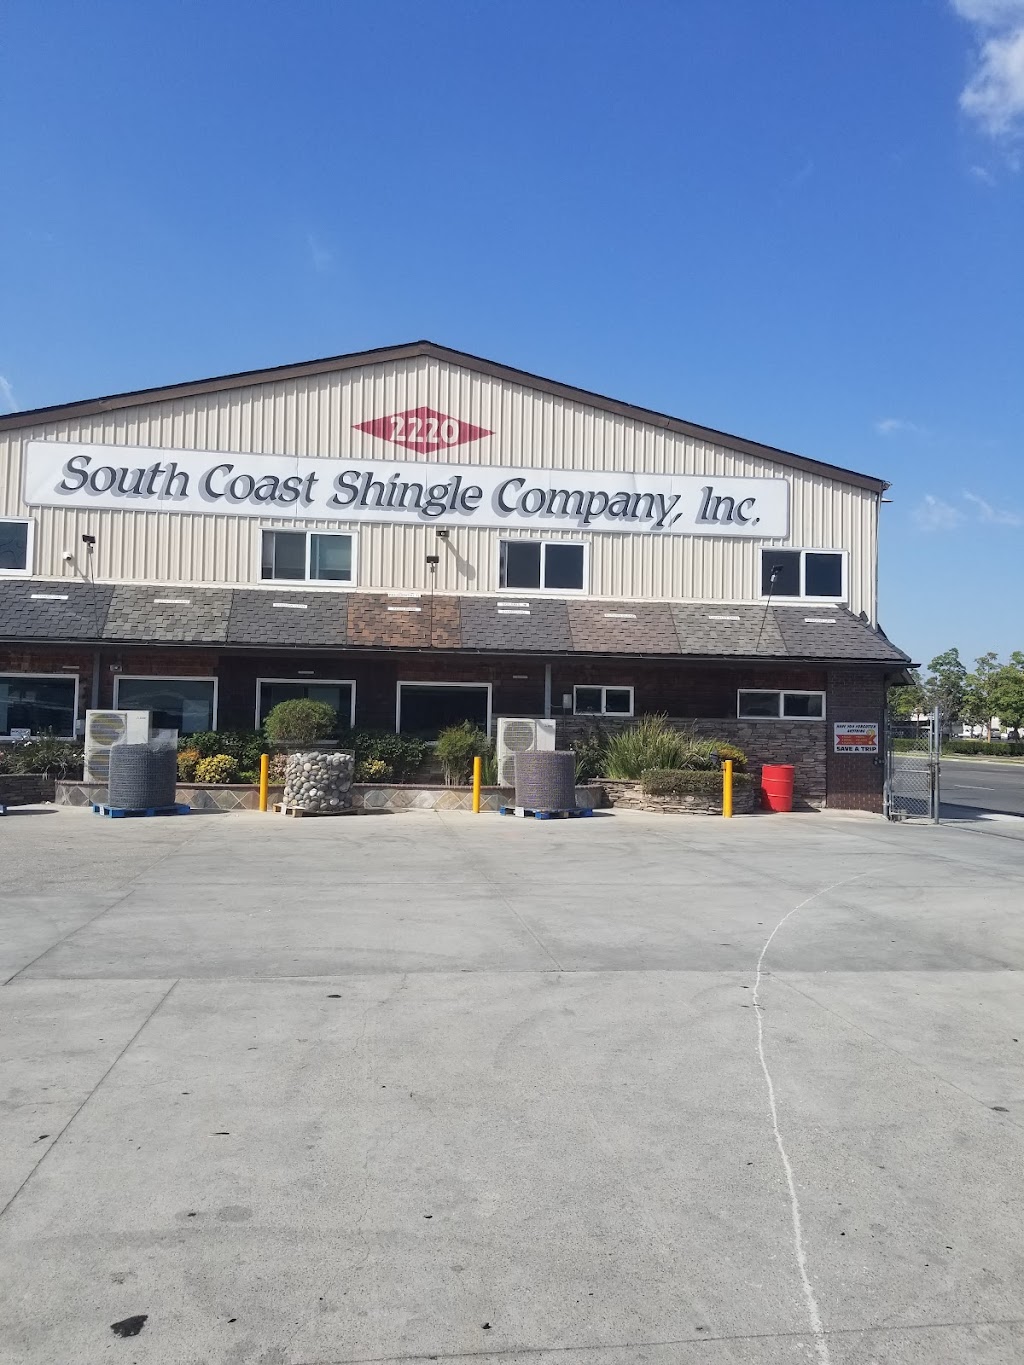 South Coast Shingle Co Inc | 2220 South St, Long Beach, CA 90805, USA | Phone: (562) 634-7100